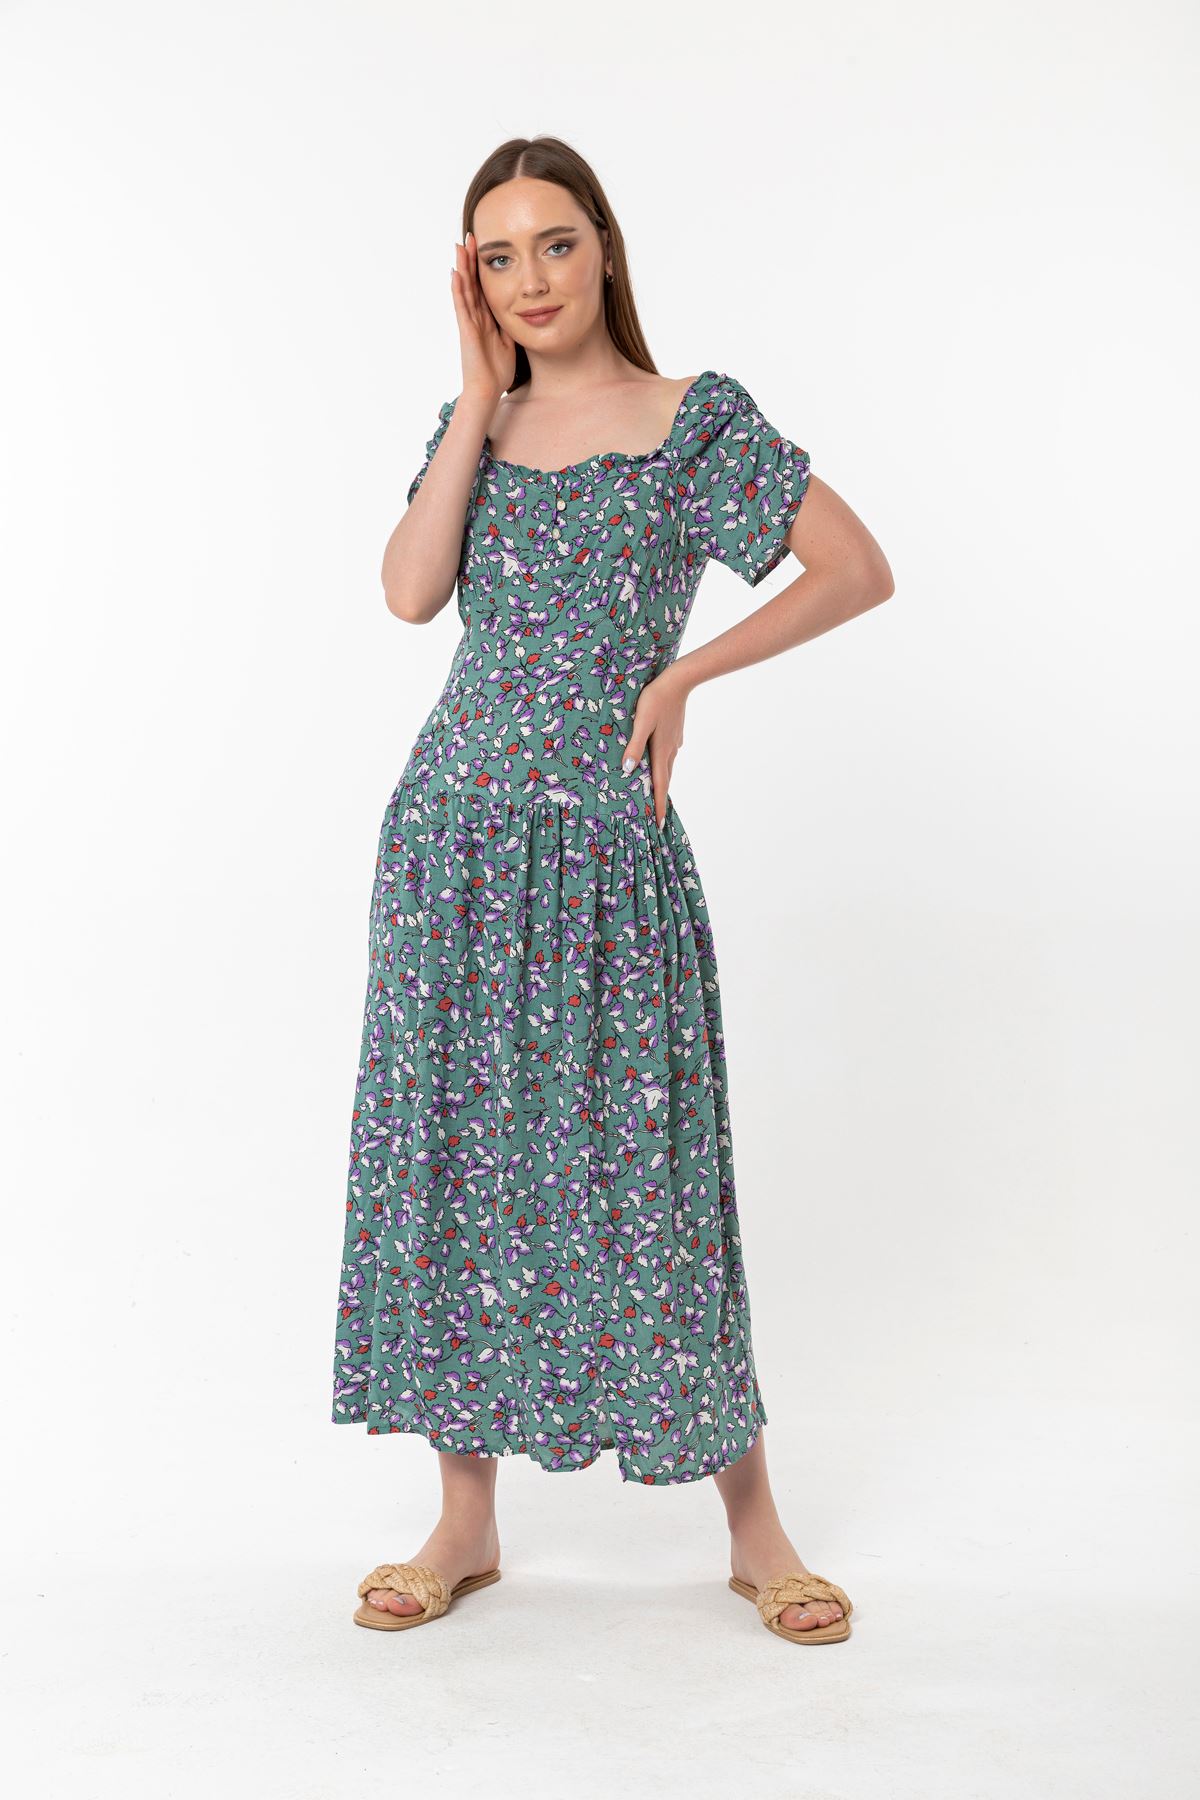 Empirme Kumaş Kare Yaka Çiçek Desen Büzgü Detay Kadın Elbise-Mint